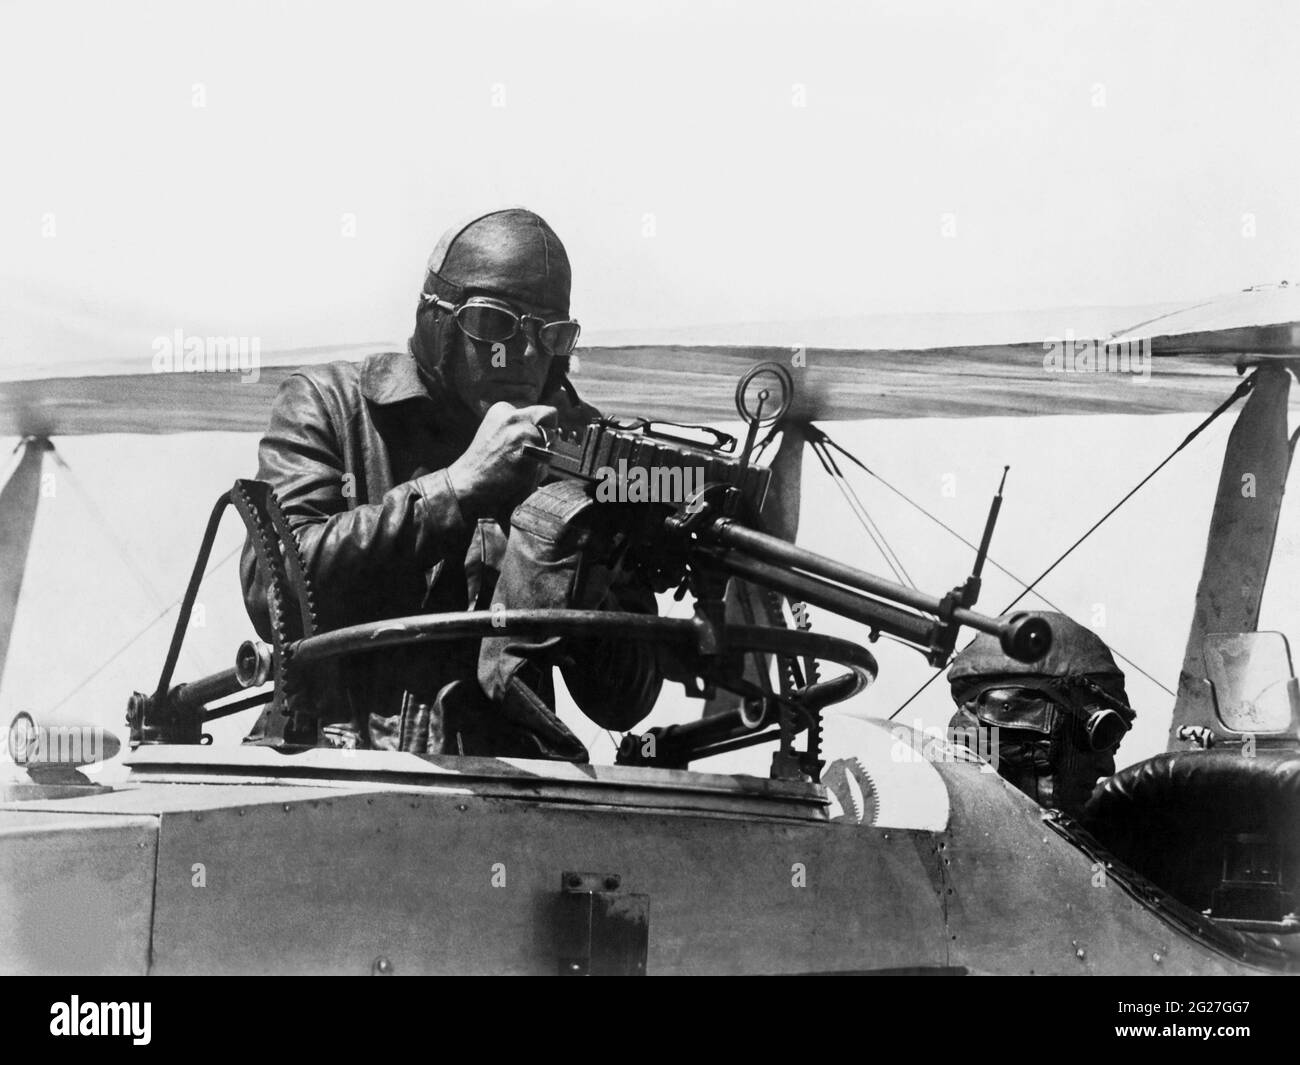 Le chef de la marine américaine Machainist Mates prenant la pratique de la mitrailleuse dans leur avion pendant la première Guerre mondiale. Banque D'Images